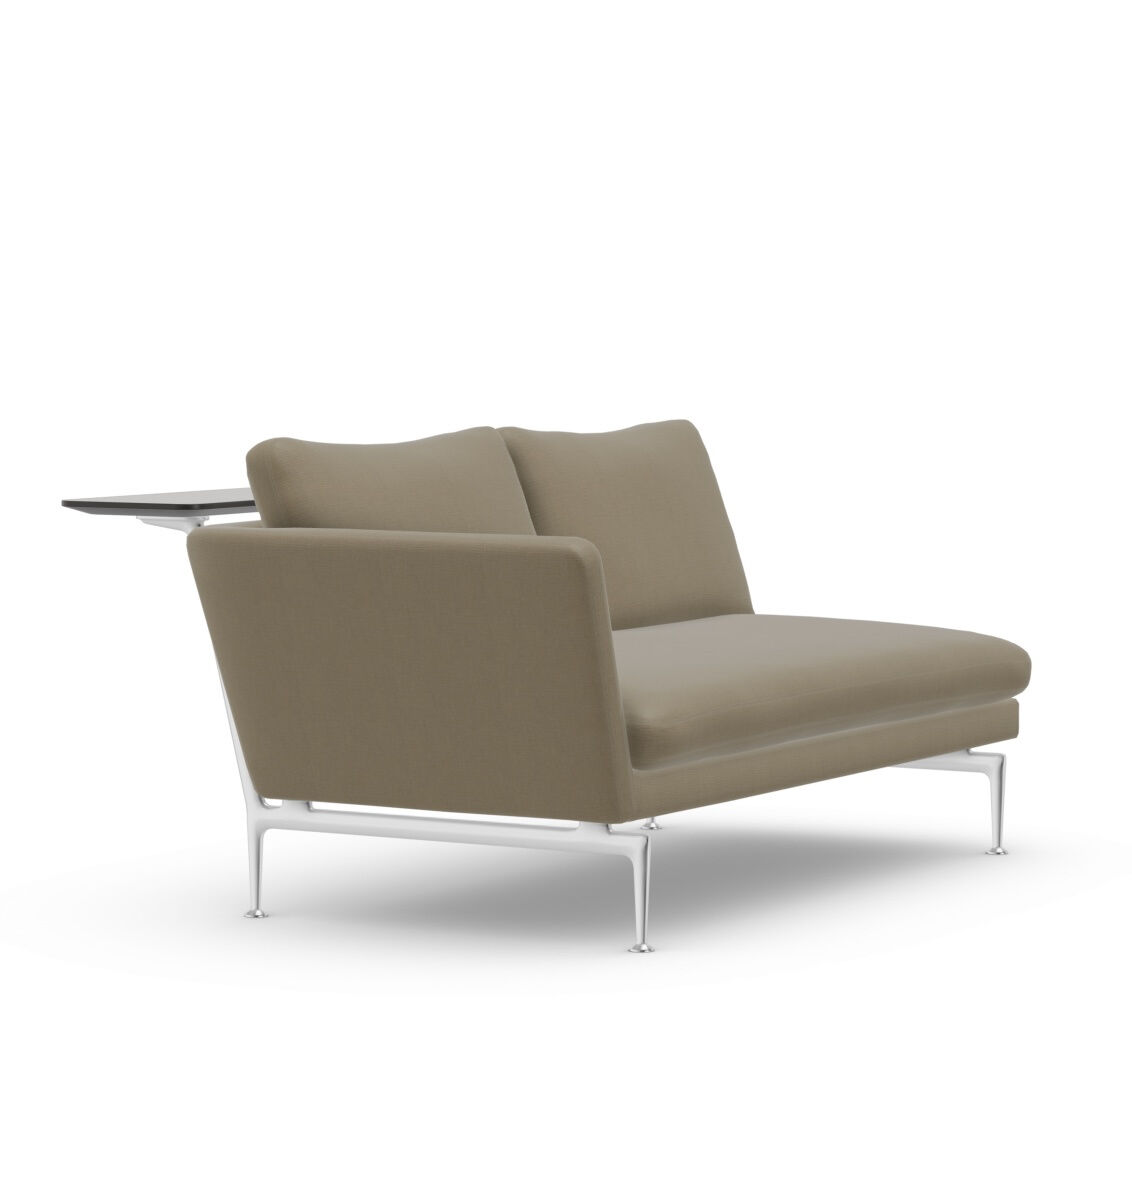 vitra-sofa-suita-zweisitzer-offen-stoff-olimpo-sandstein-04-gestell-poliert-mf-0005574-001